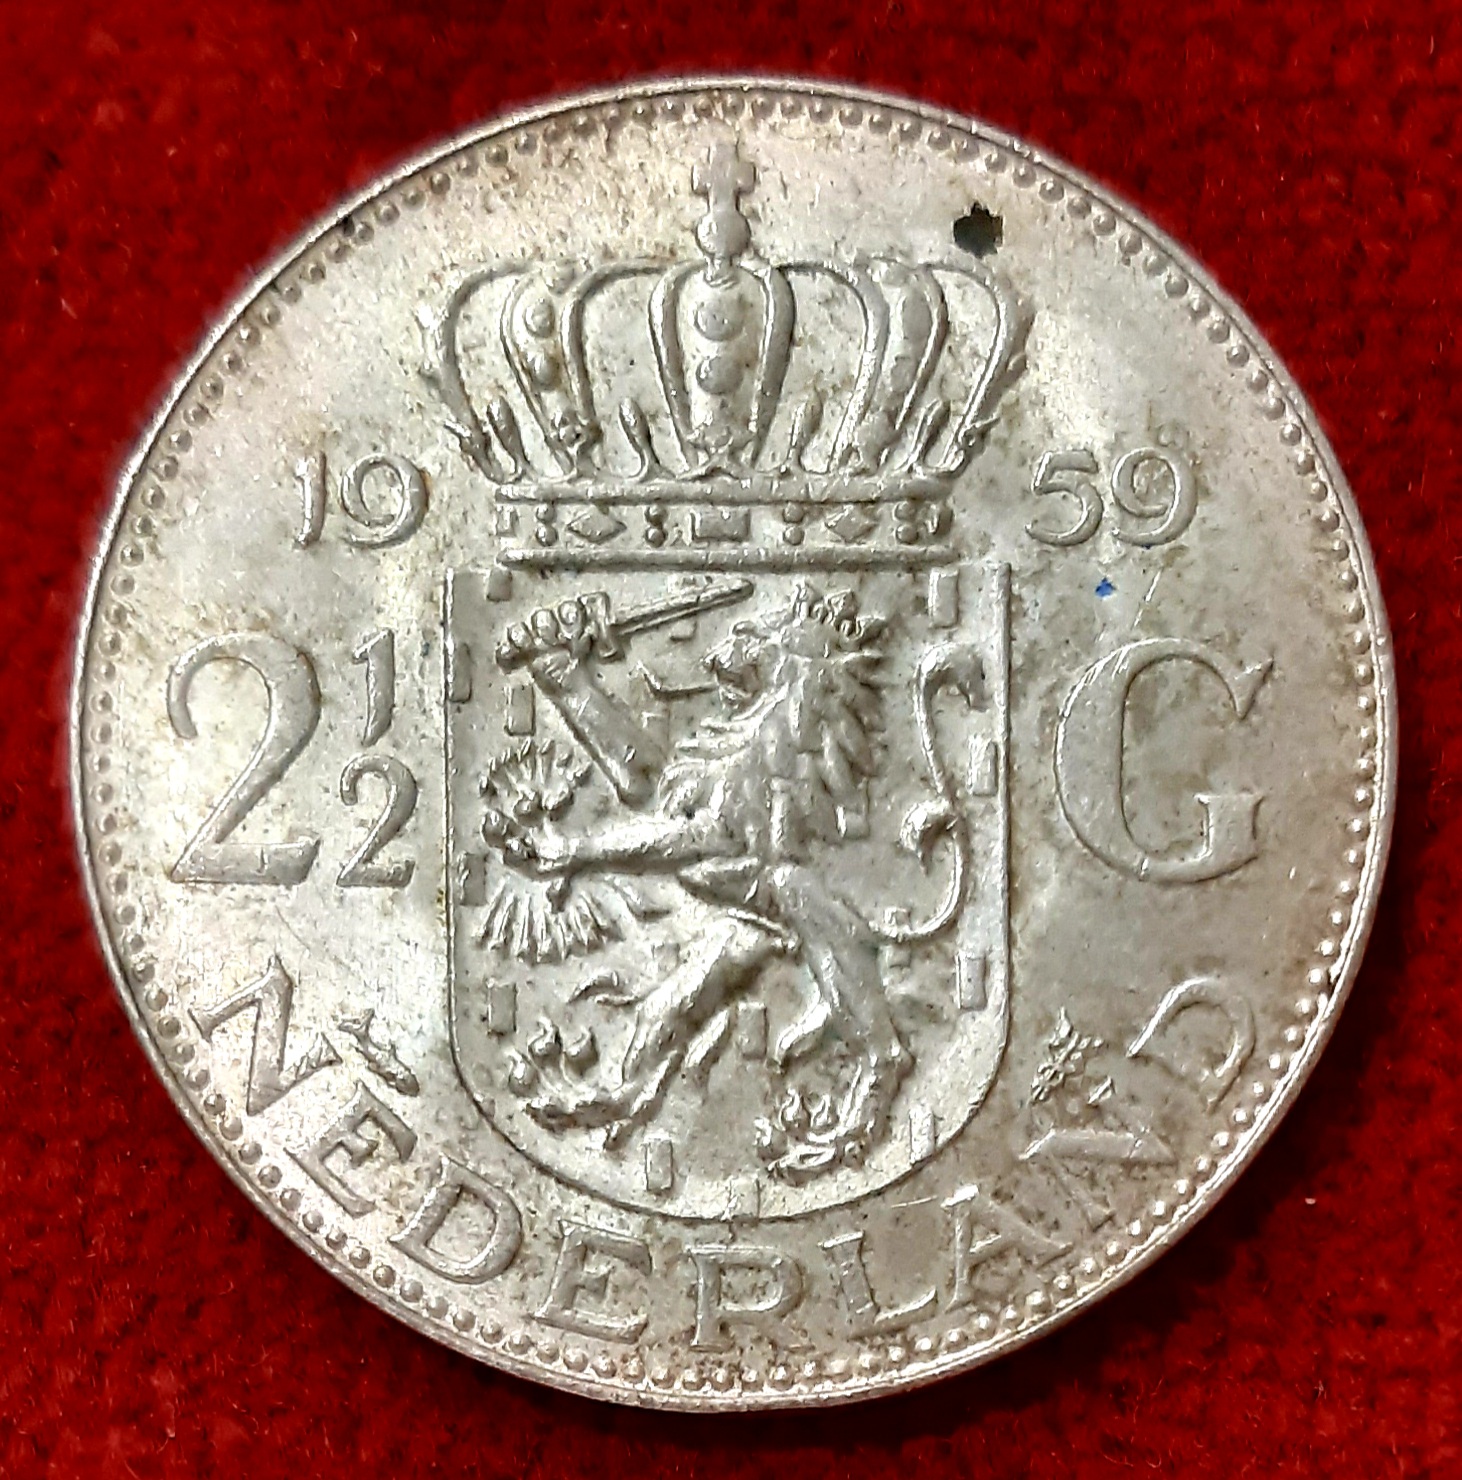 Pays Bas 2. 1/2 Gulden Argent 1959.